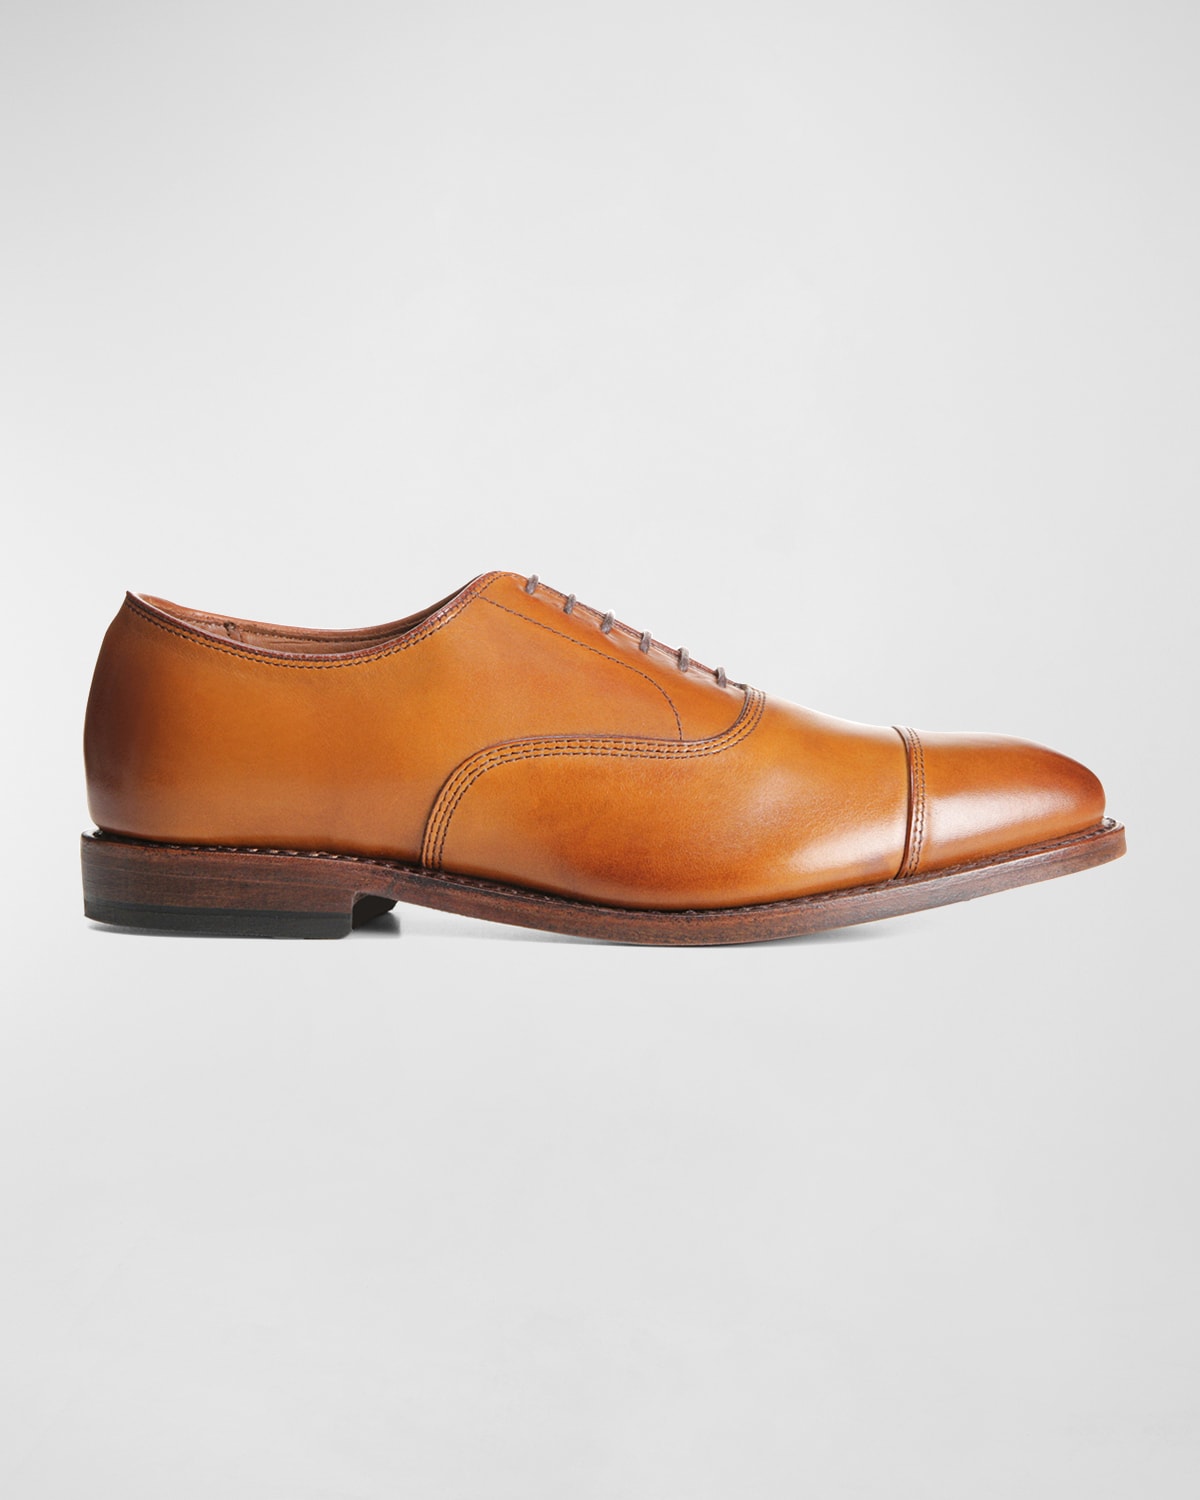 Allen Edmonds Men's Park Avenue Leather Oxford Shoes